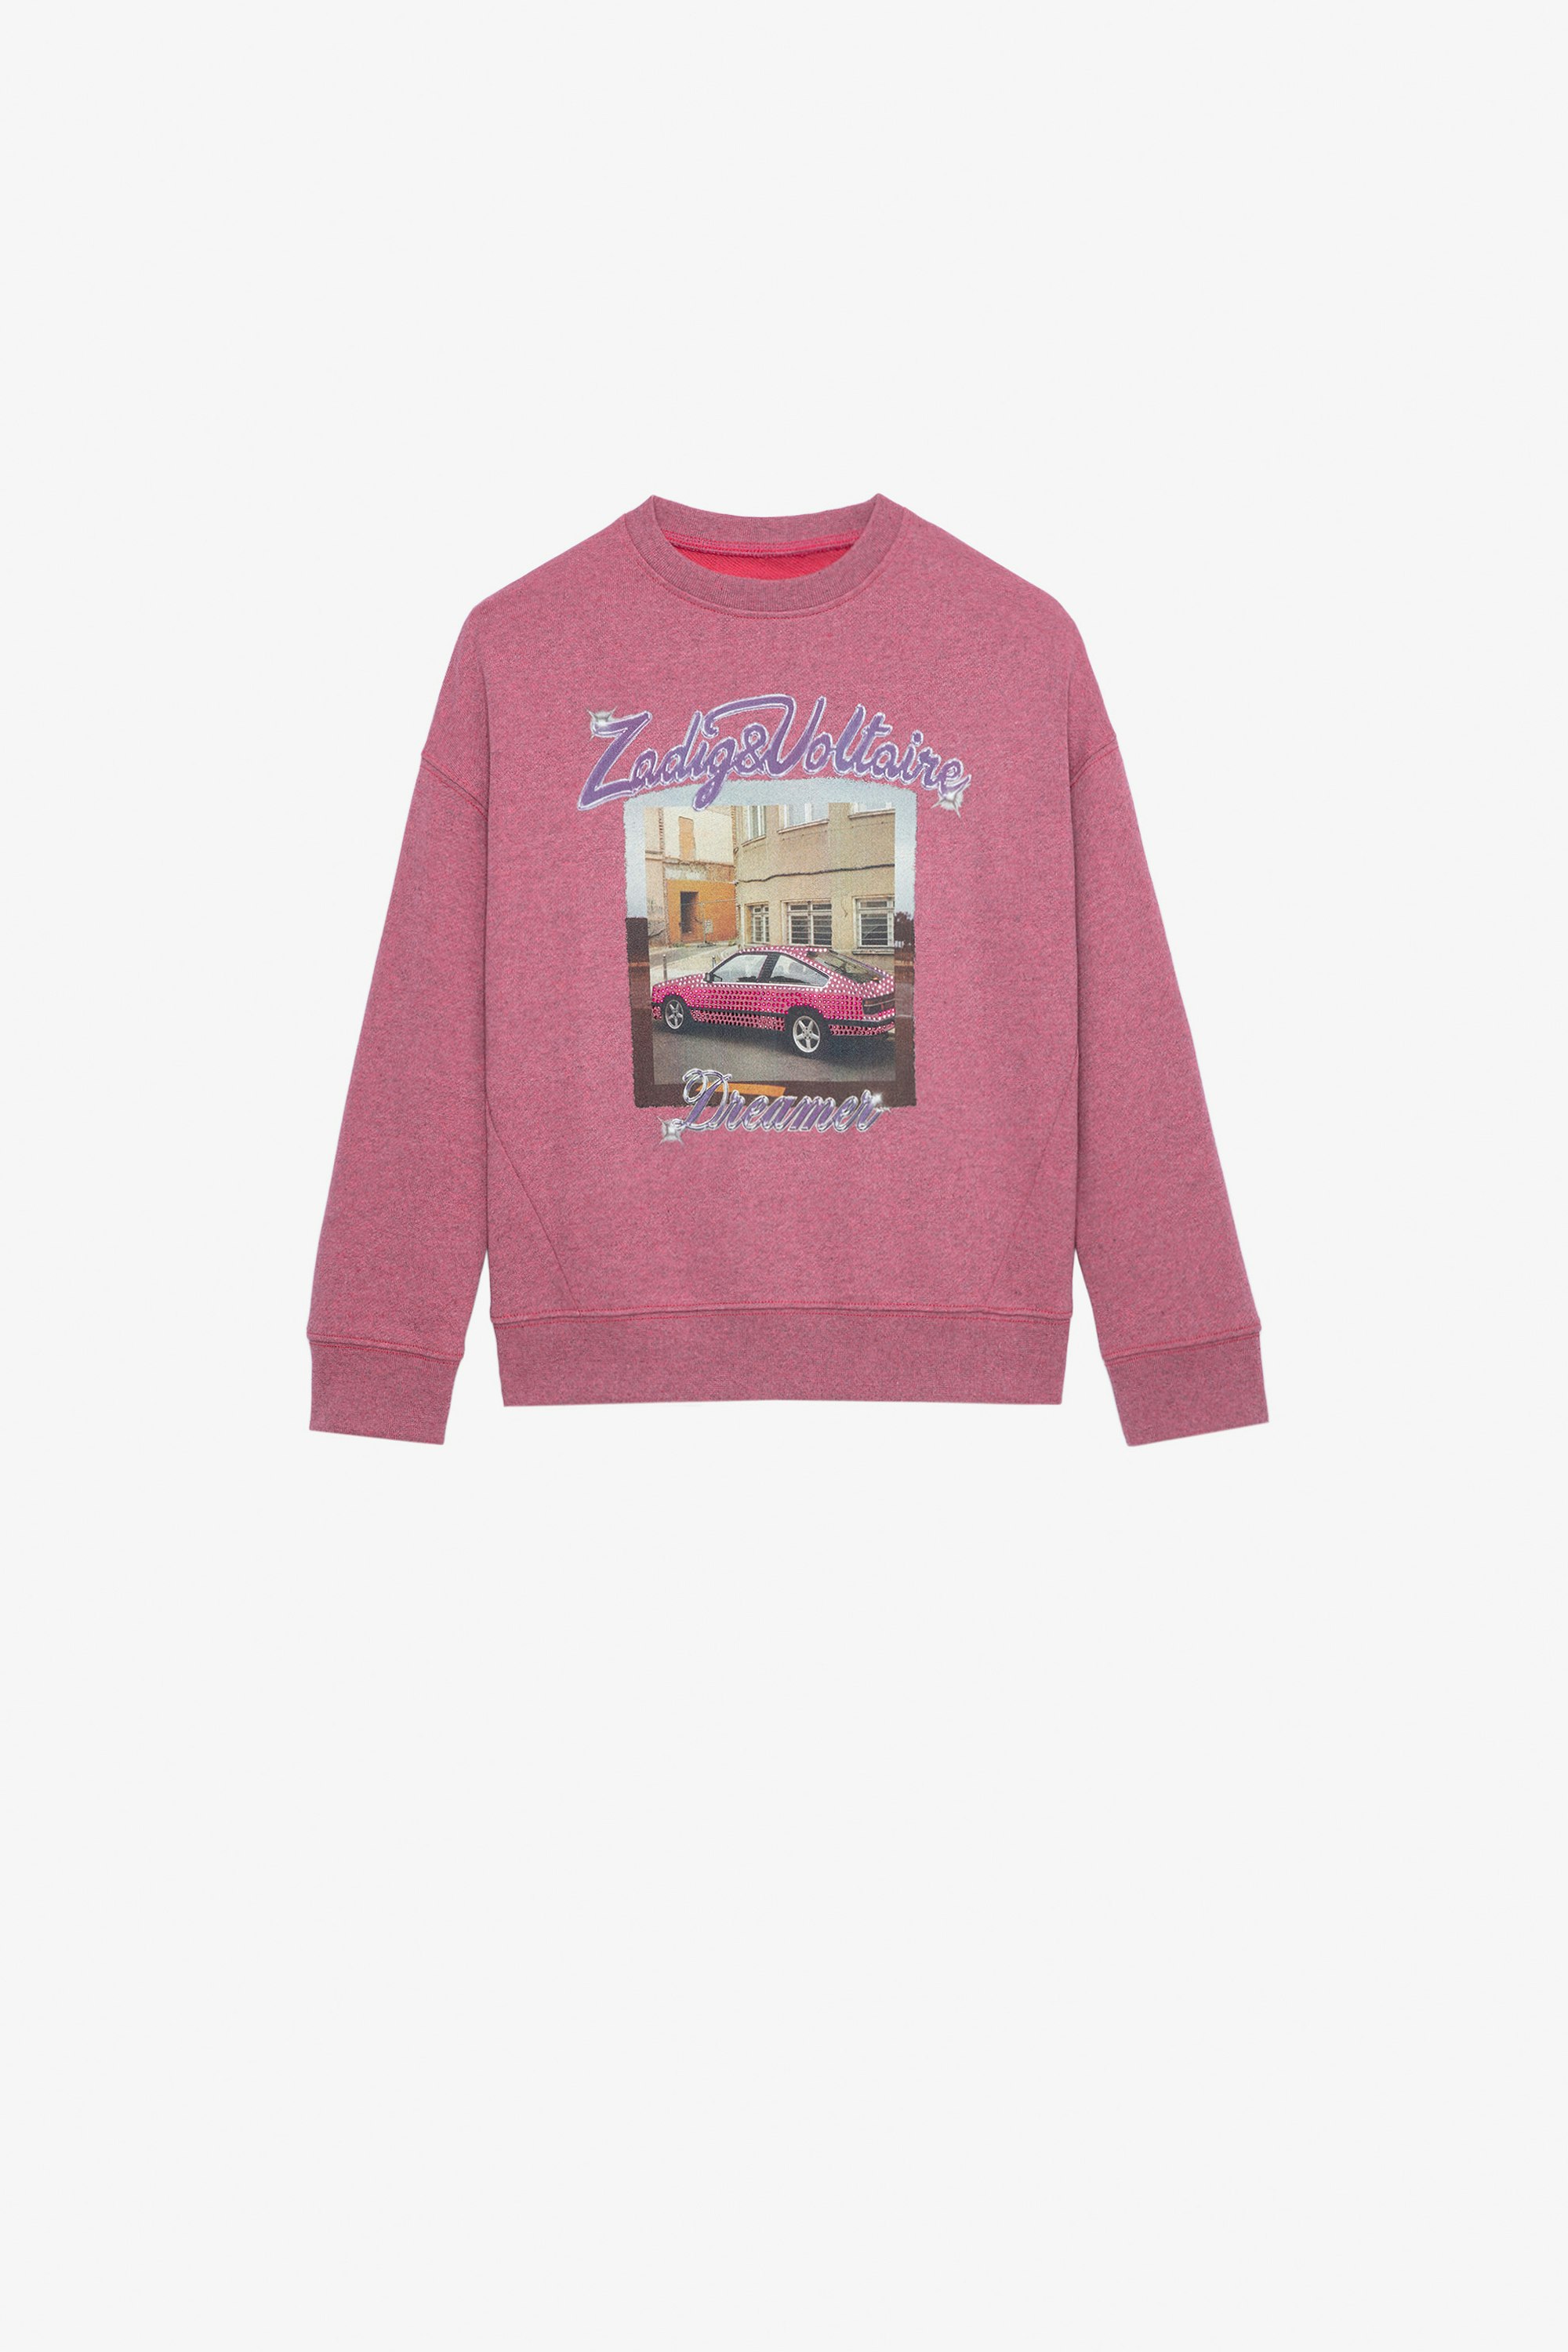 Liberty Girls’ Sweatshirt Girls’ pink marl cotton fleece sweatshirt with illustration.